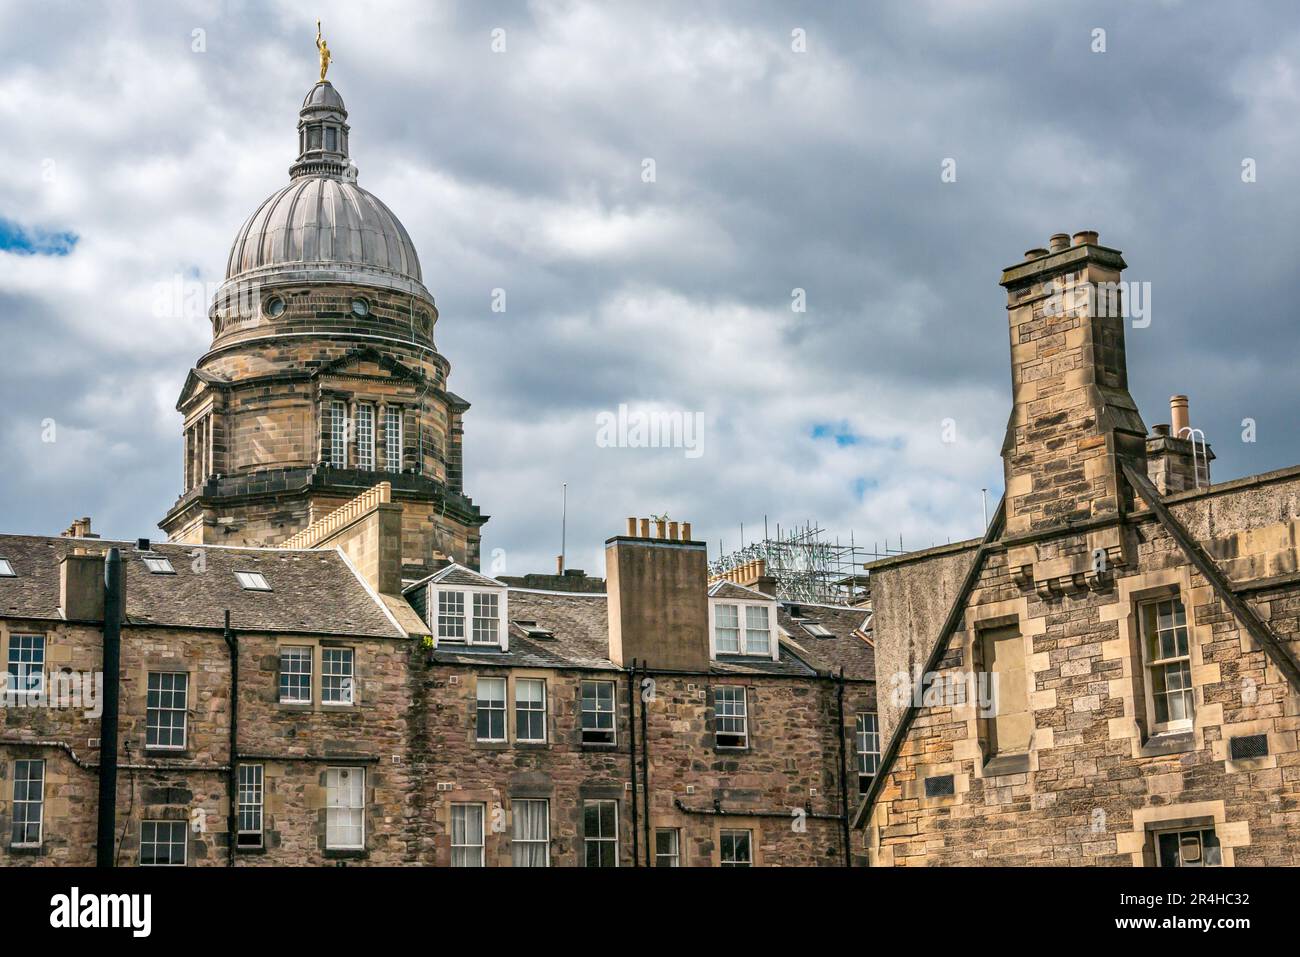 Gewölbte Spitze des Old College, University of Edinburgh mit goldener Zierstatue der Figur der Jugend, Mietgebäude, Schottland, Großbritannien Stockfoto